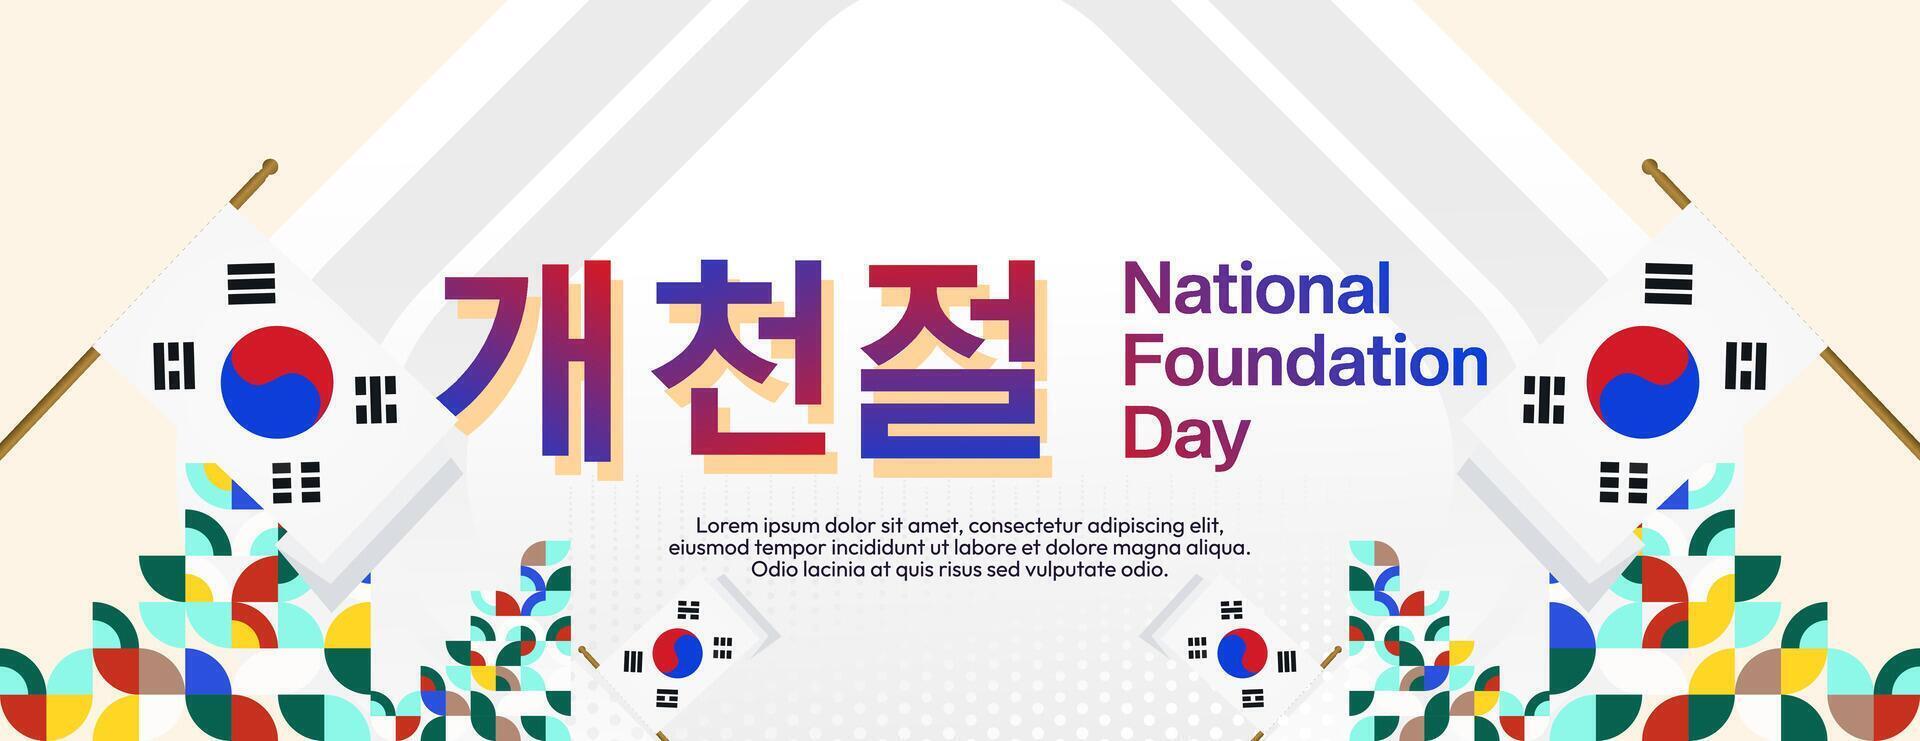 korea nationell fundament dag bred baner i färgrik modern geometrisk stil. Lycklig gaecheonjeol dag är söder koreanska nationell fundament dag. vektor illustration för nationell Semester